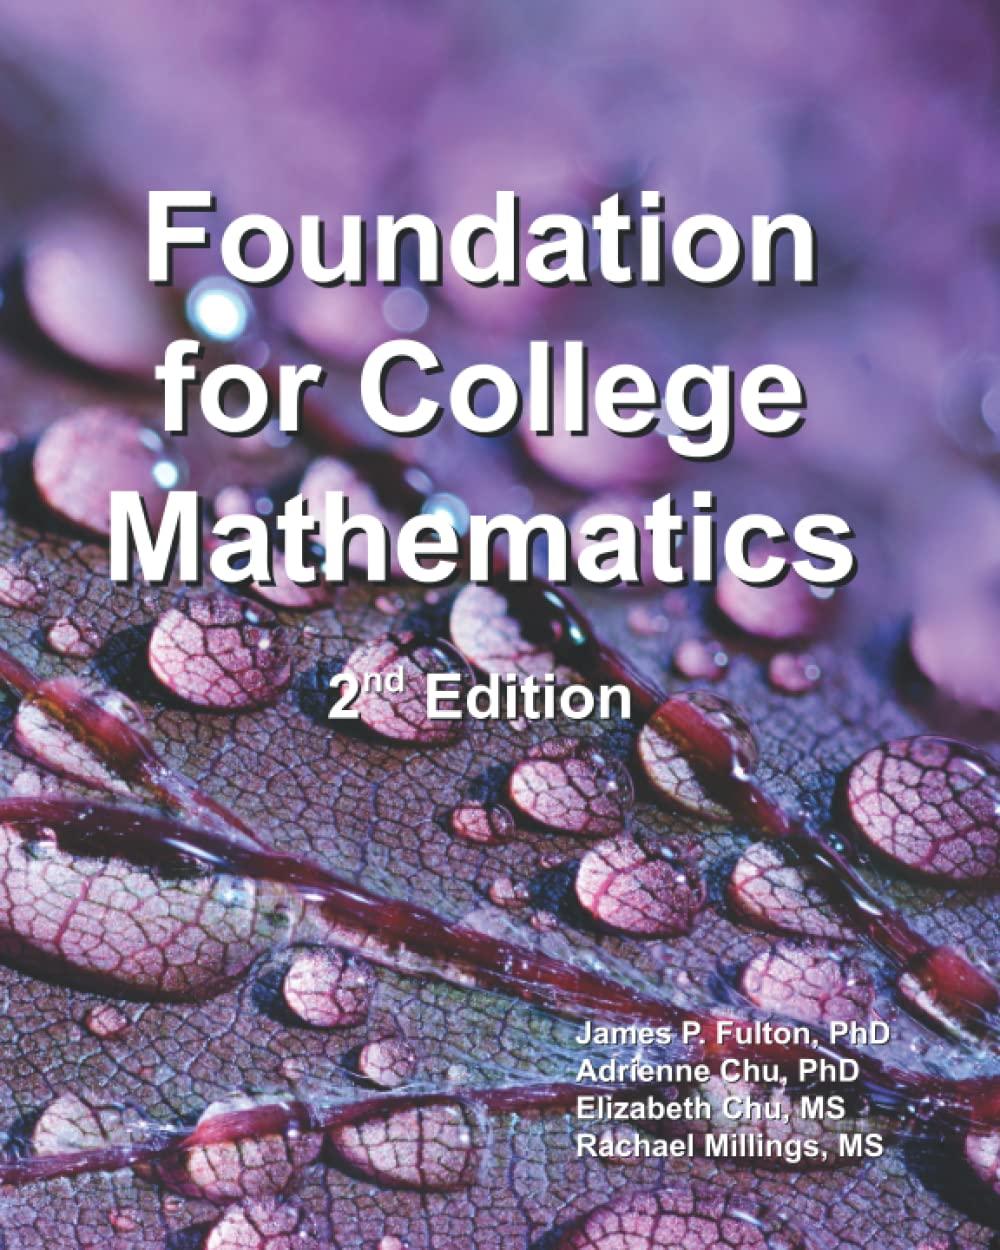 foundation for college mathematics 2nd edition dr. james p. fulton, dr. adrienne chu, elizabeth chu, rachael